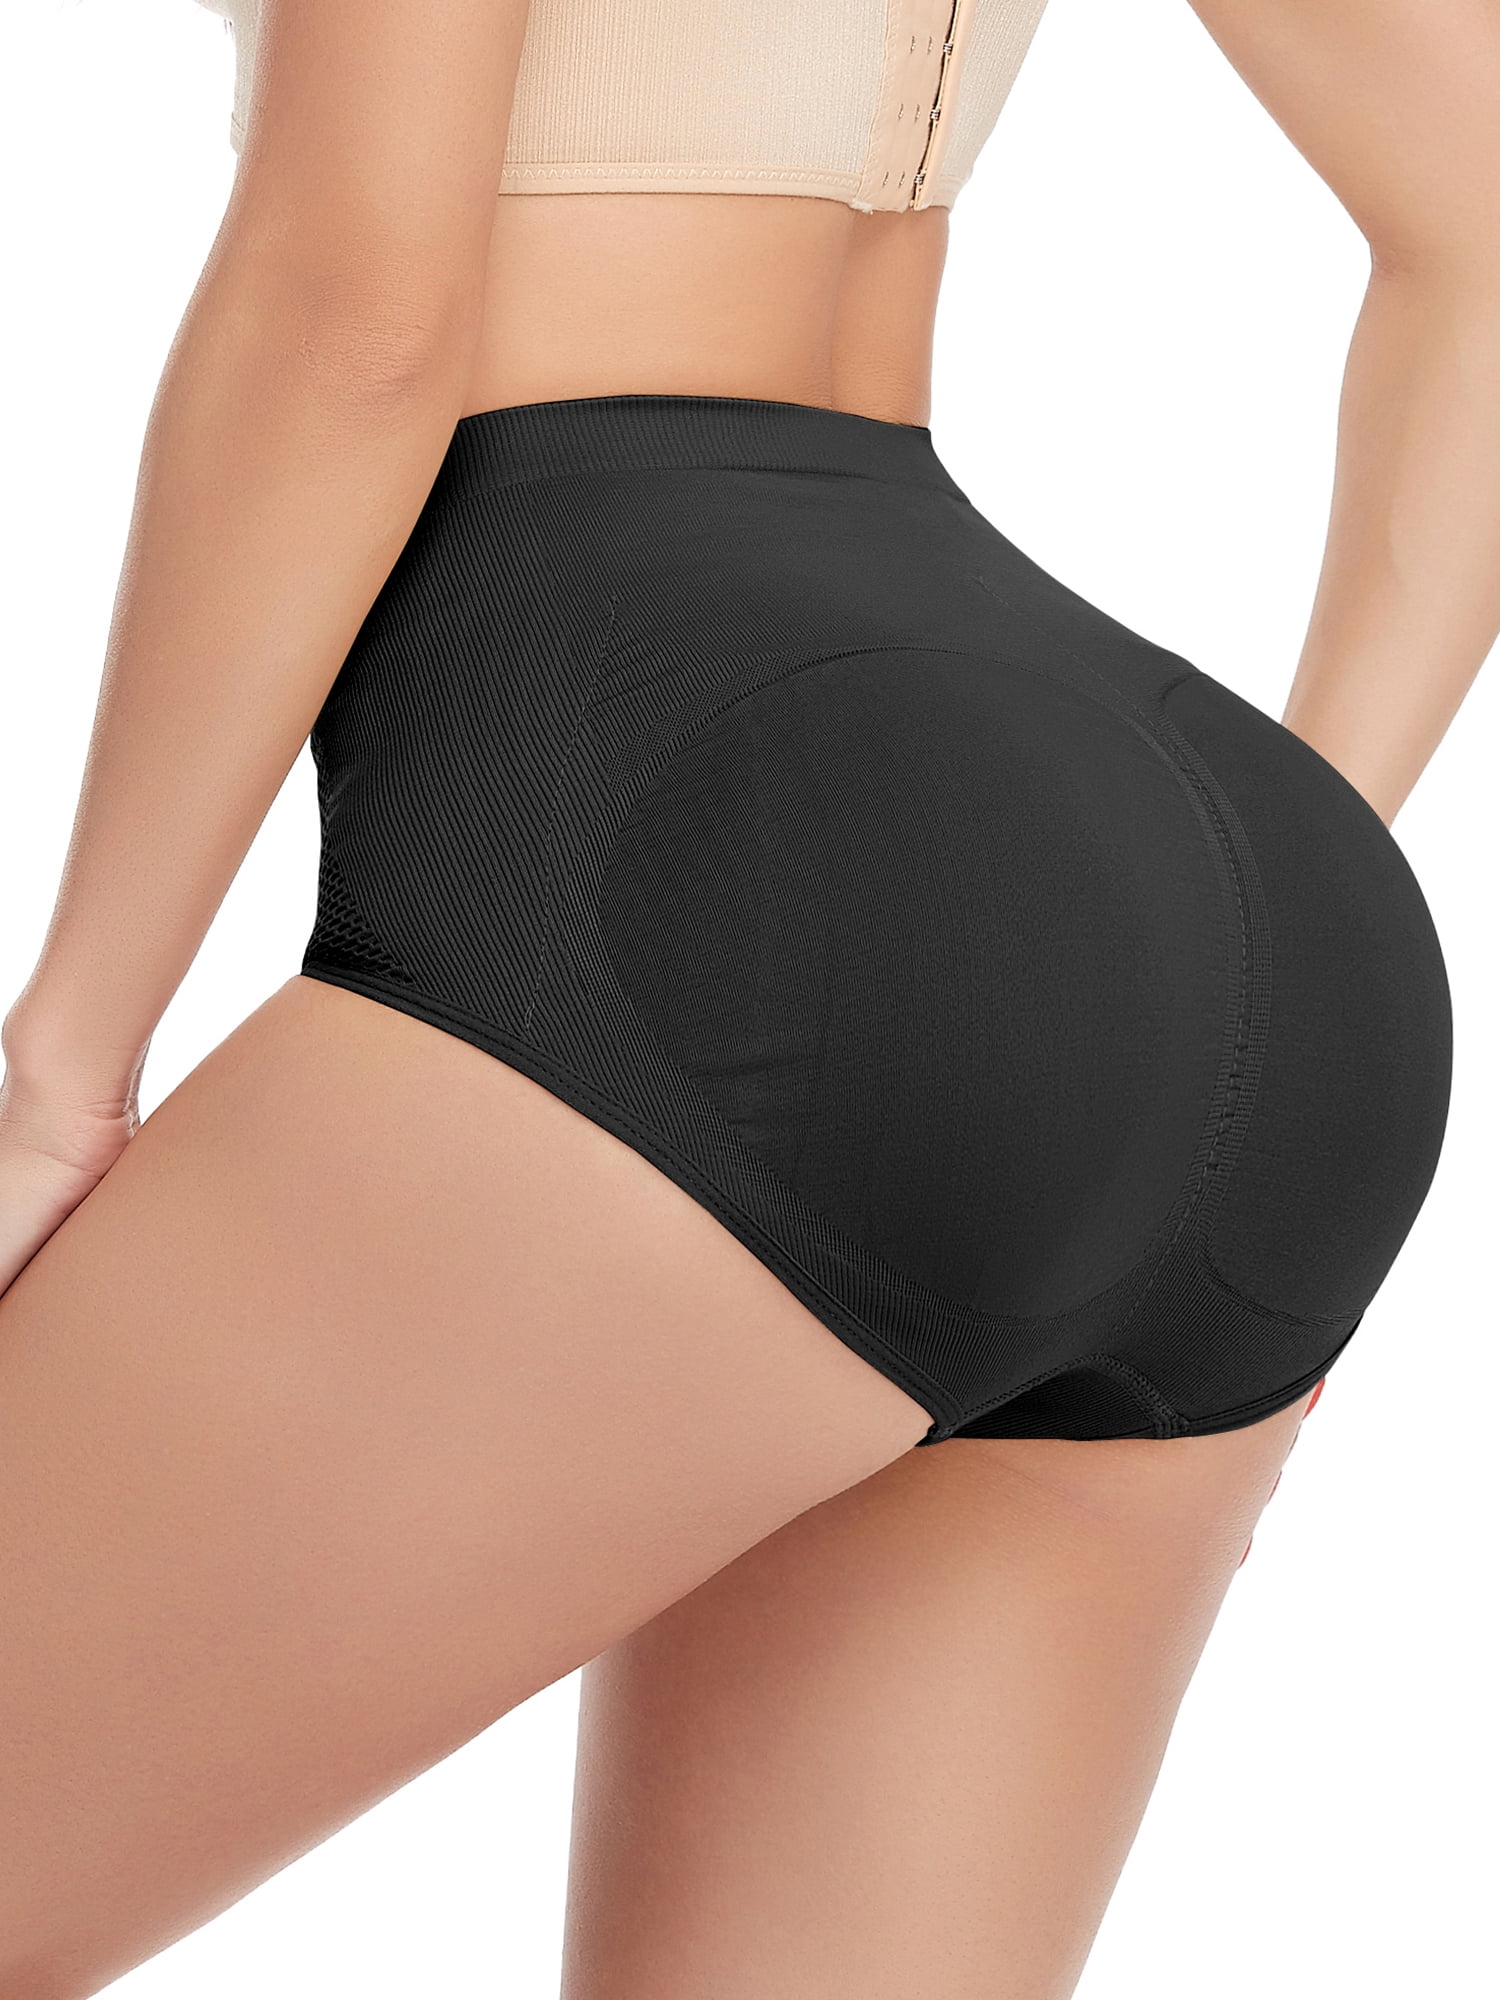 Women High-waist Seamless Briefs Padded Butt Lifter Body Shaper